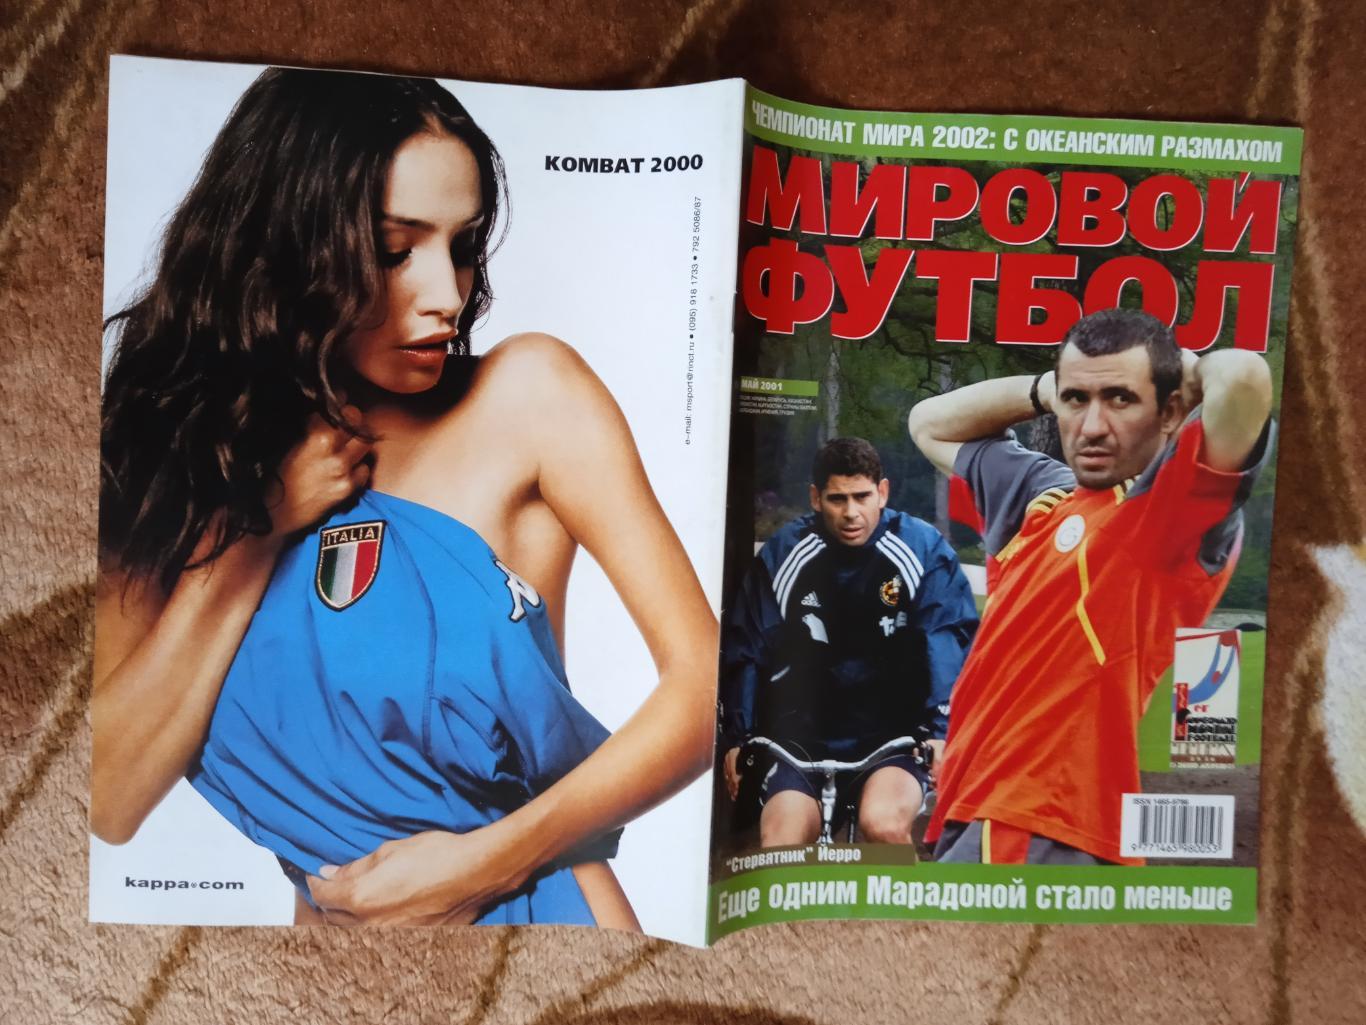 Журнал.Мировой футбол.Май 2001 г. (Постеры).